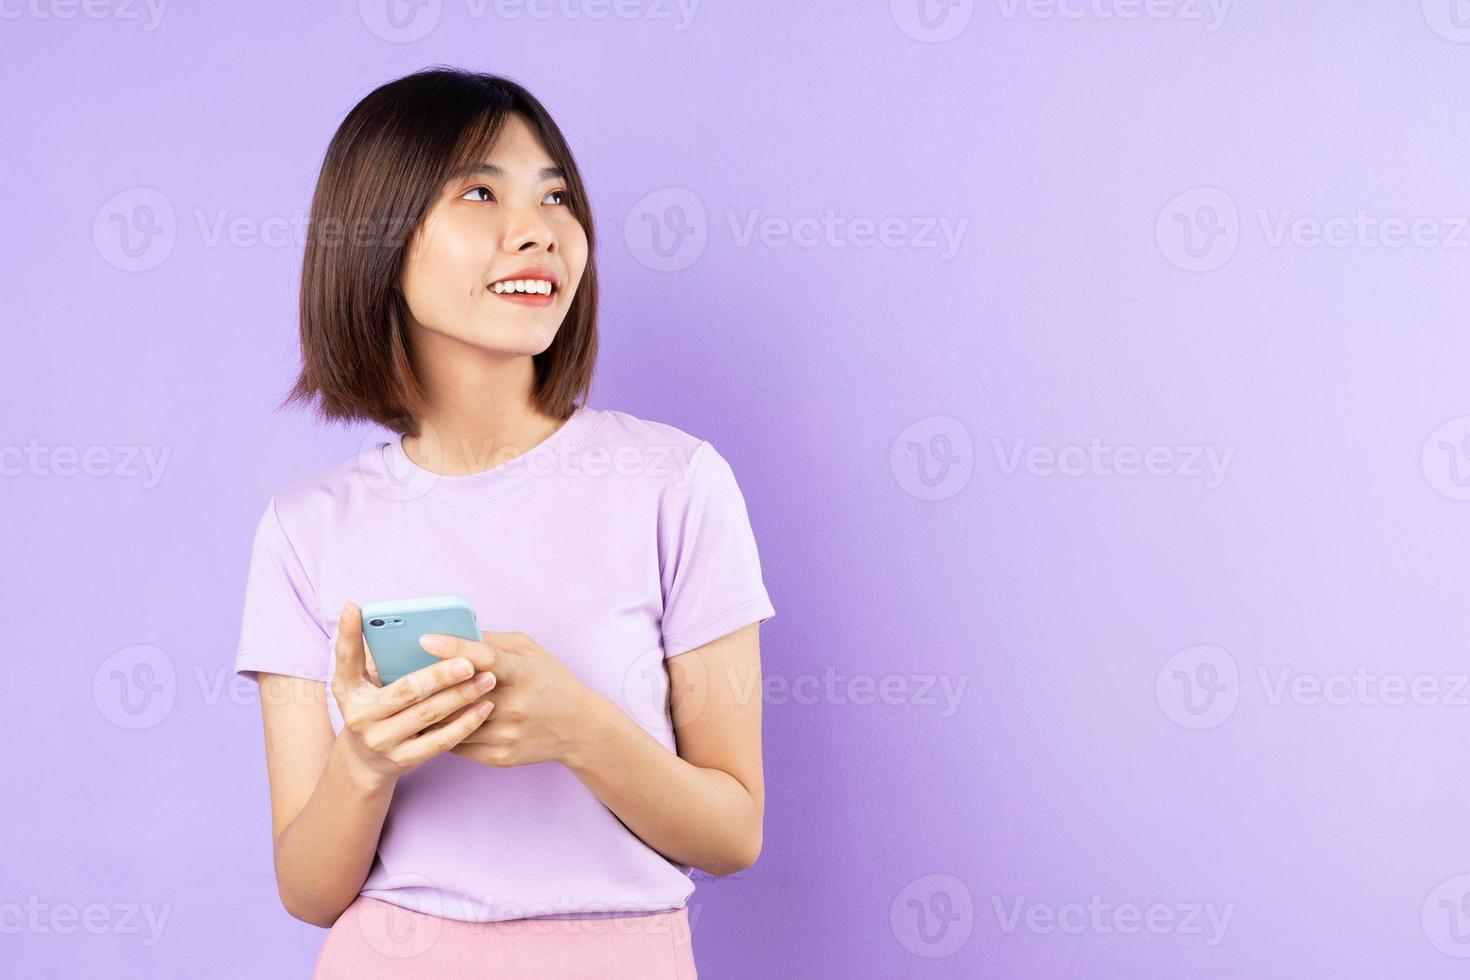 bellissimo ritratto di donna asiatica, isolato su sfondo viola foto